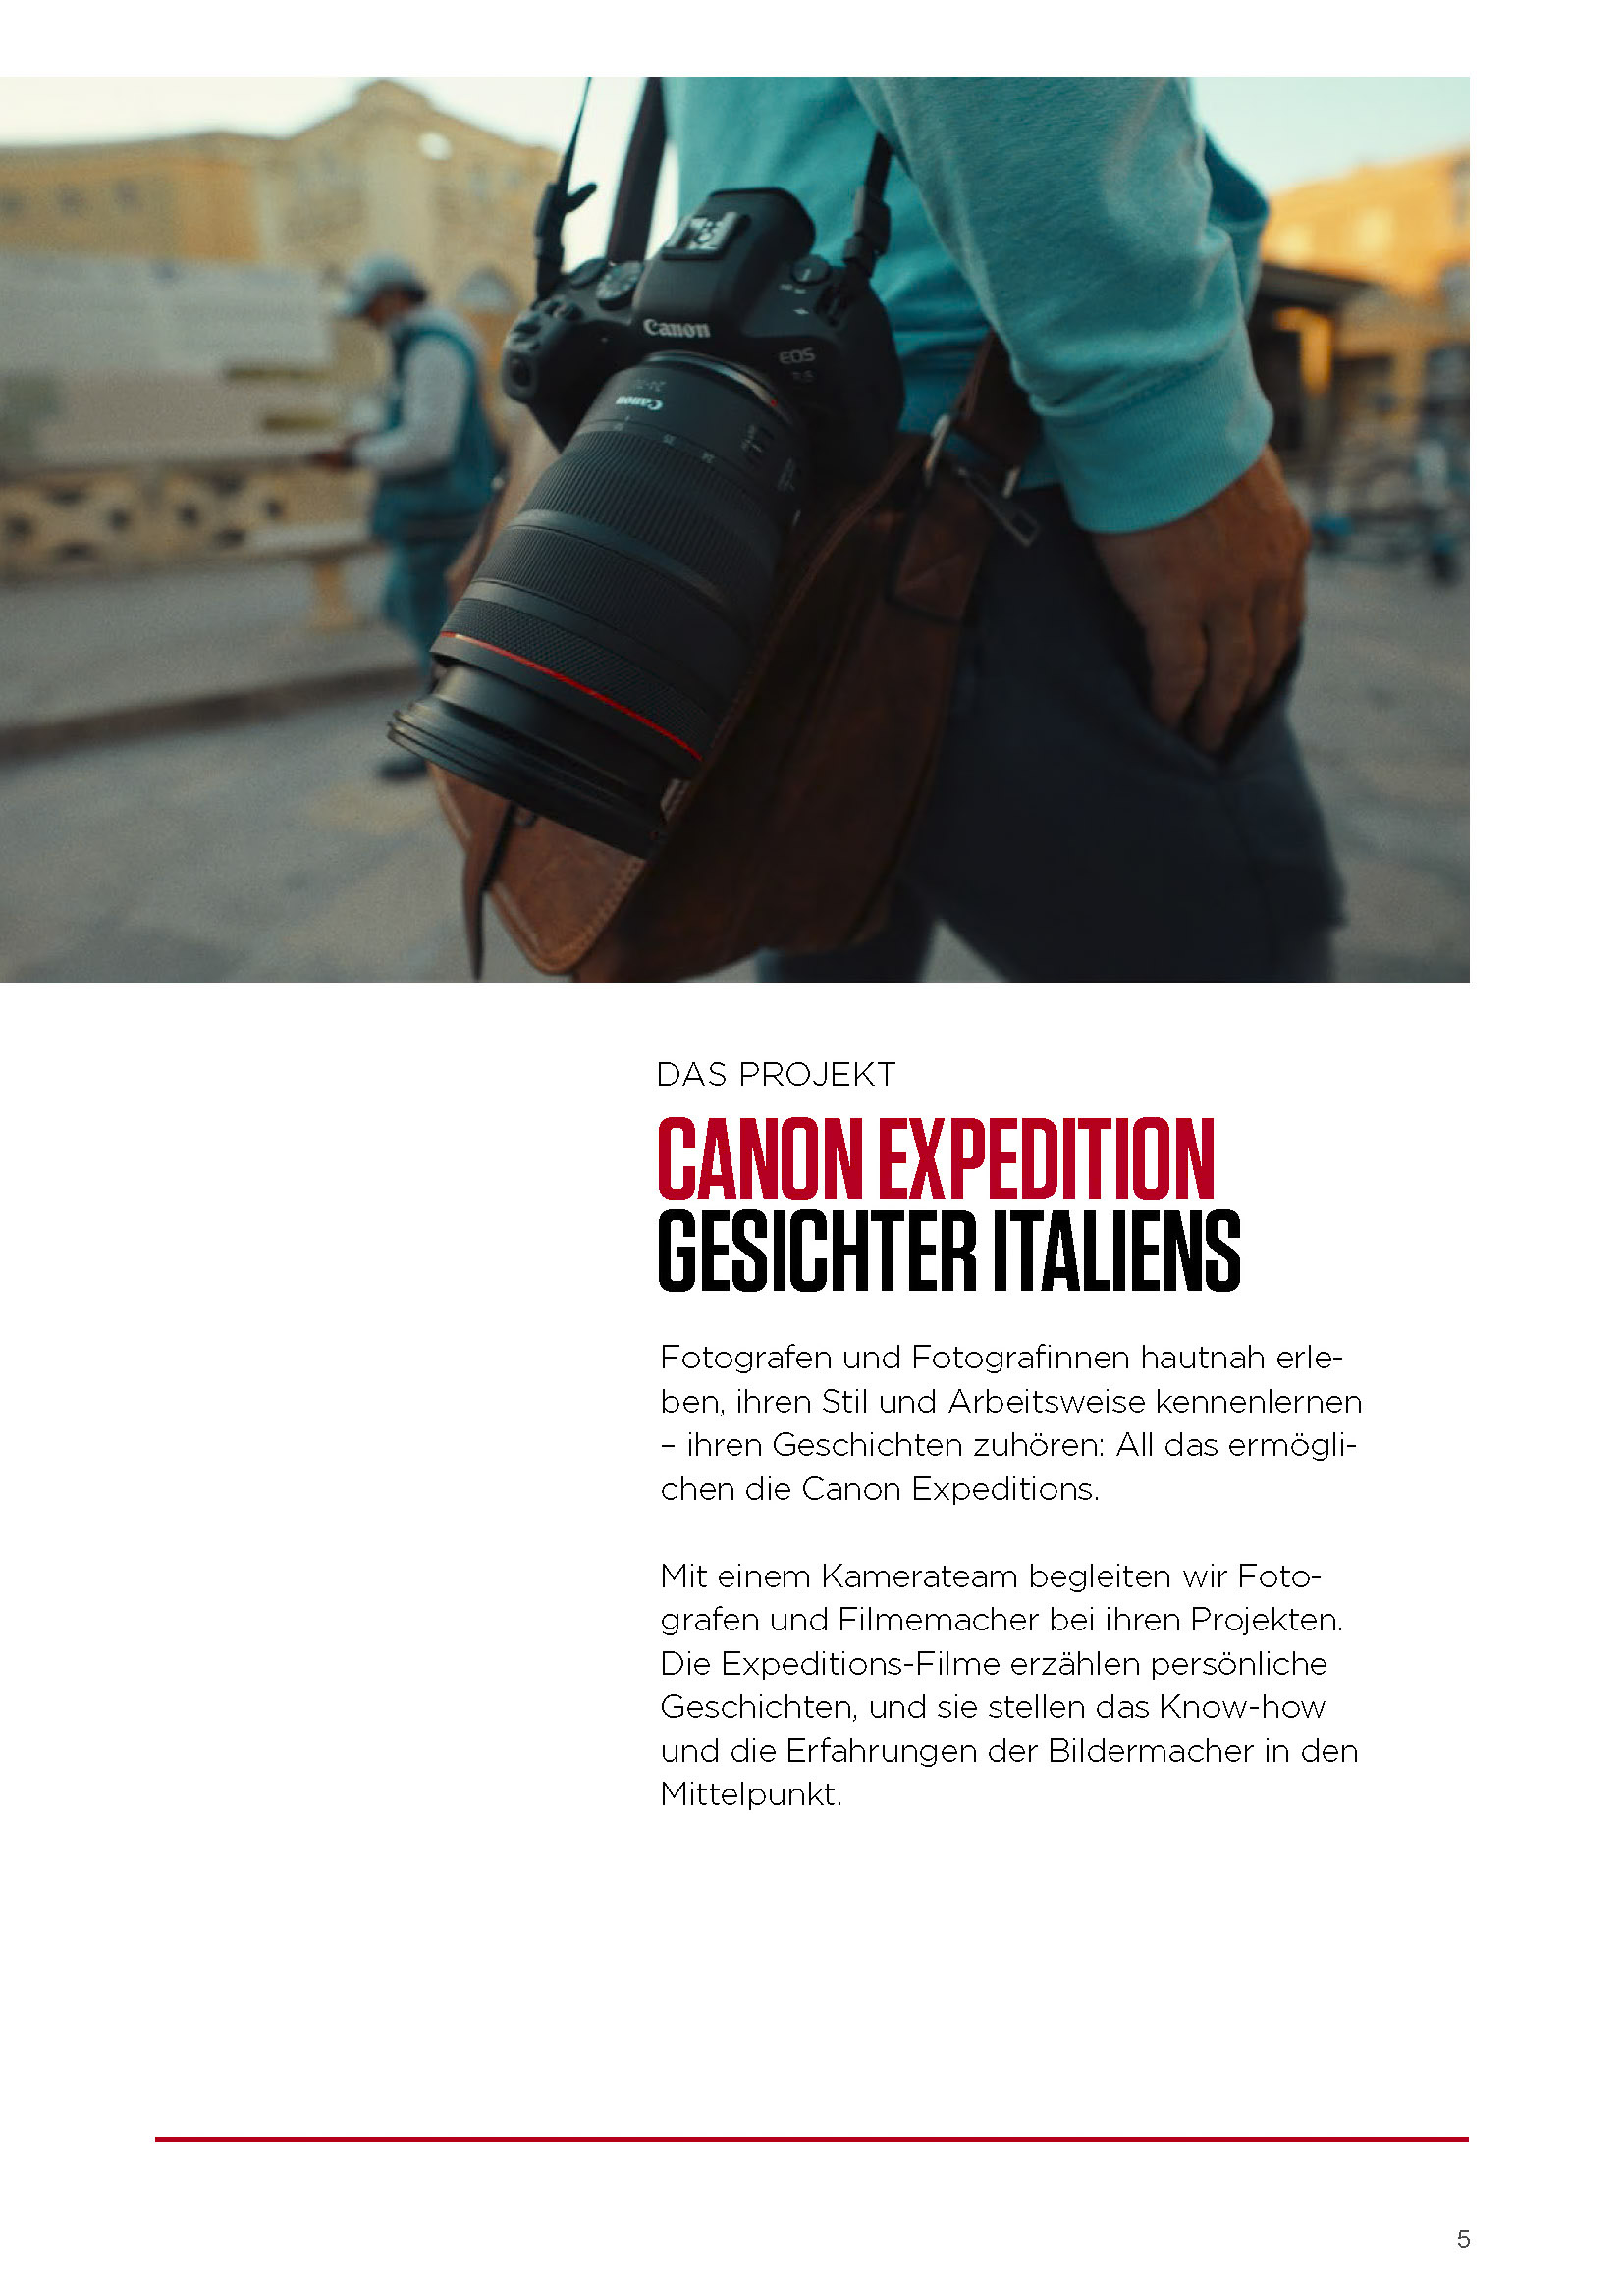 Eine Person hält eine Canon-Kamera, wobei der Fokus auf der Kamera und ihrer legeren Kleidung liegt, vor einem städtischen Hintergrund. Außerdem ist ein Dokument zu sehen, das das Projekt „Canon Expedition Faces of Italy“ beschreibt. © Fotografie Tomas Rodriguez